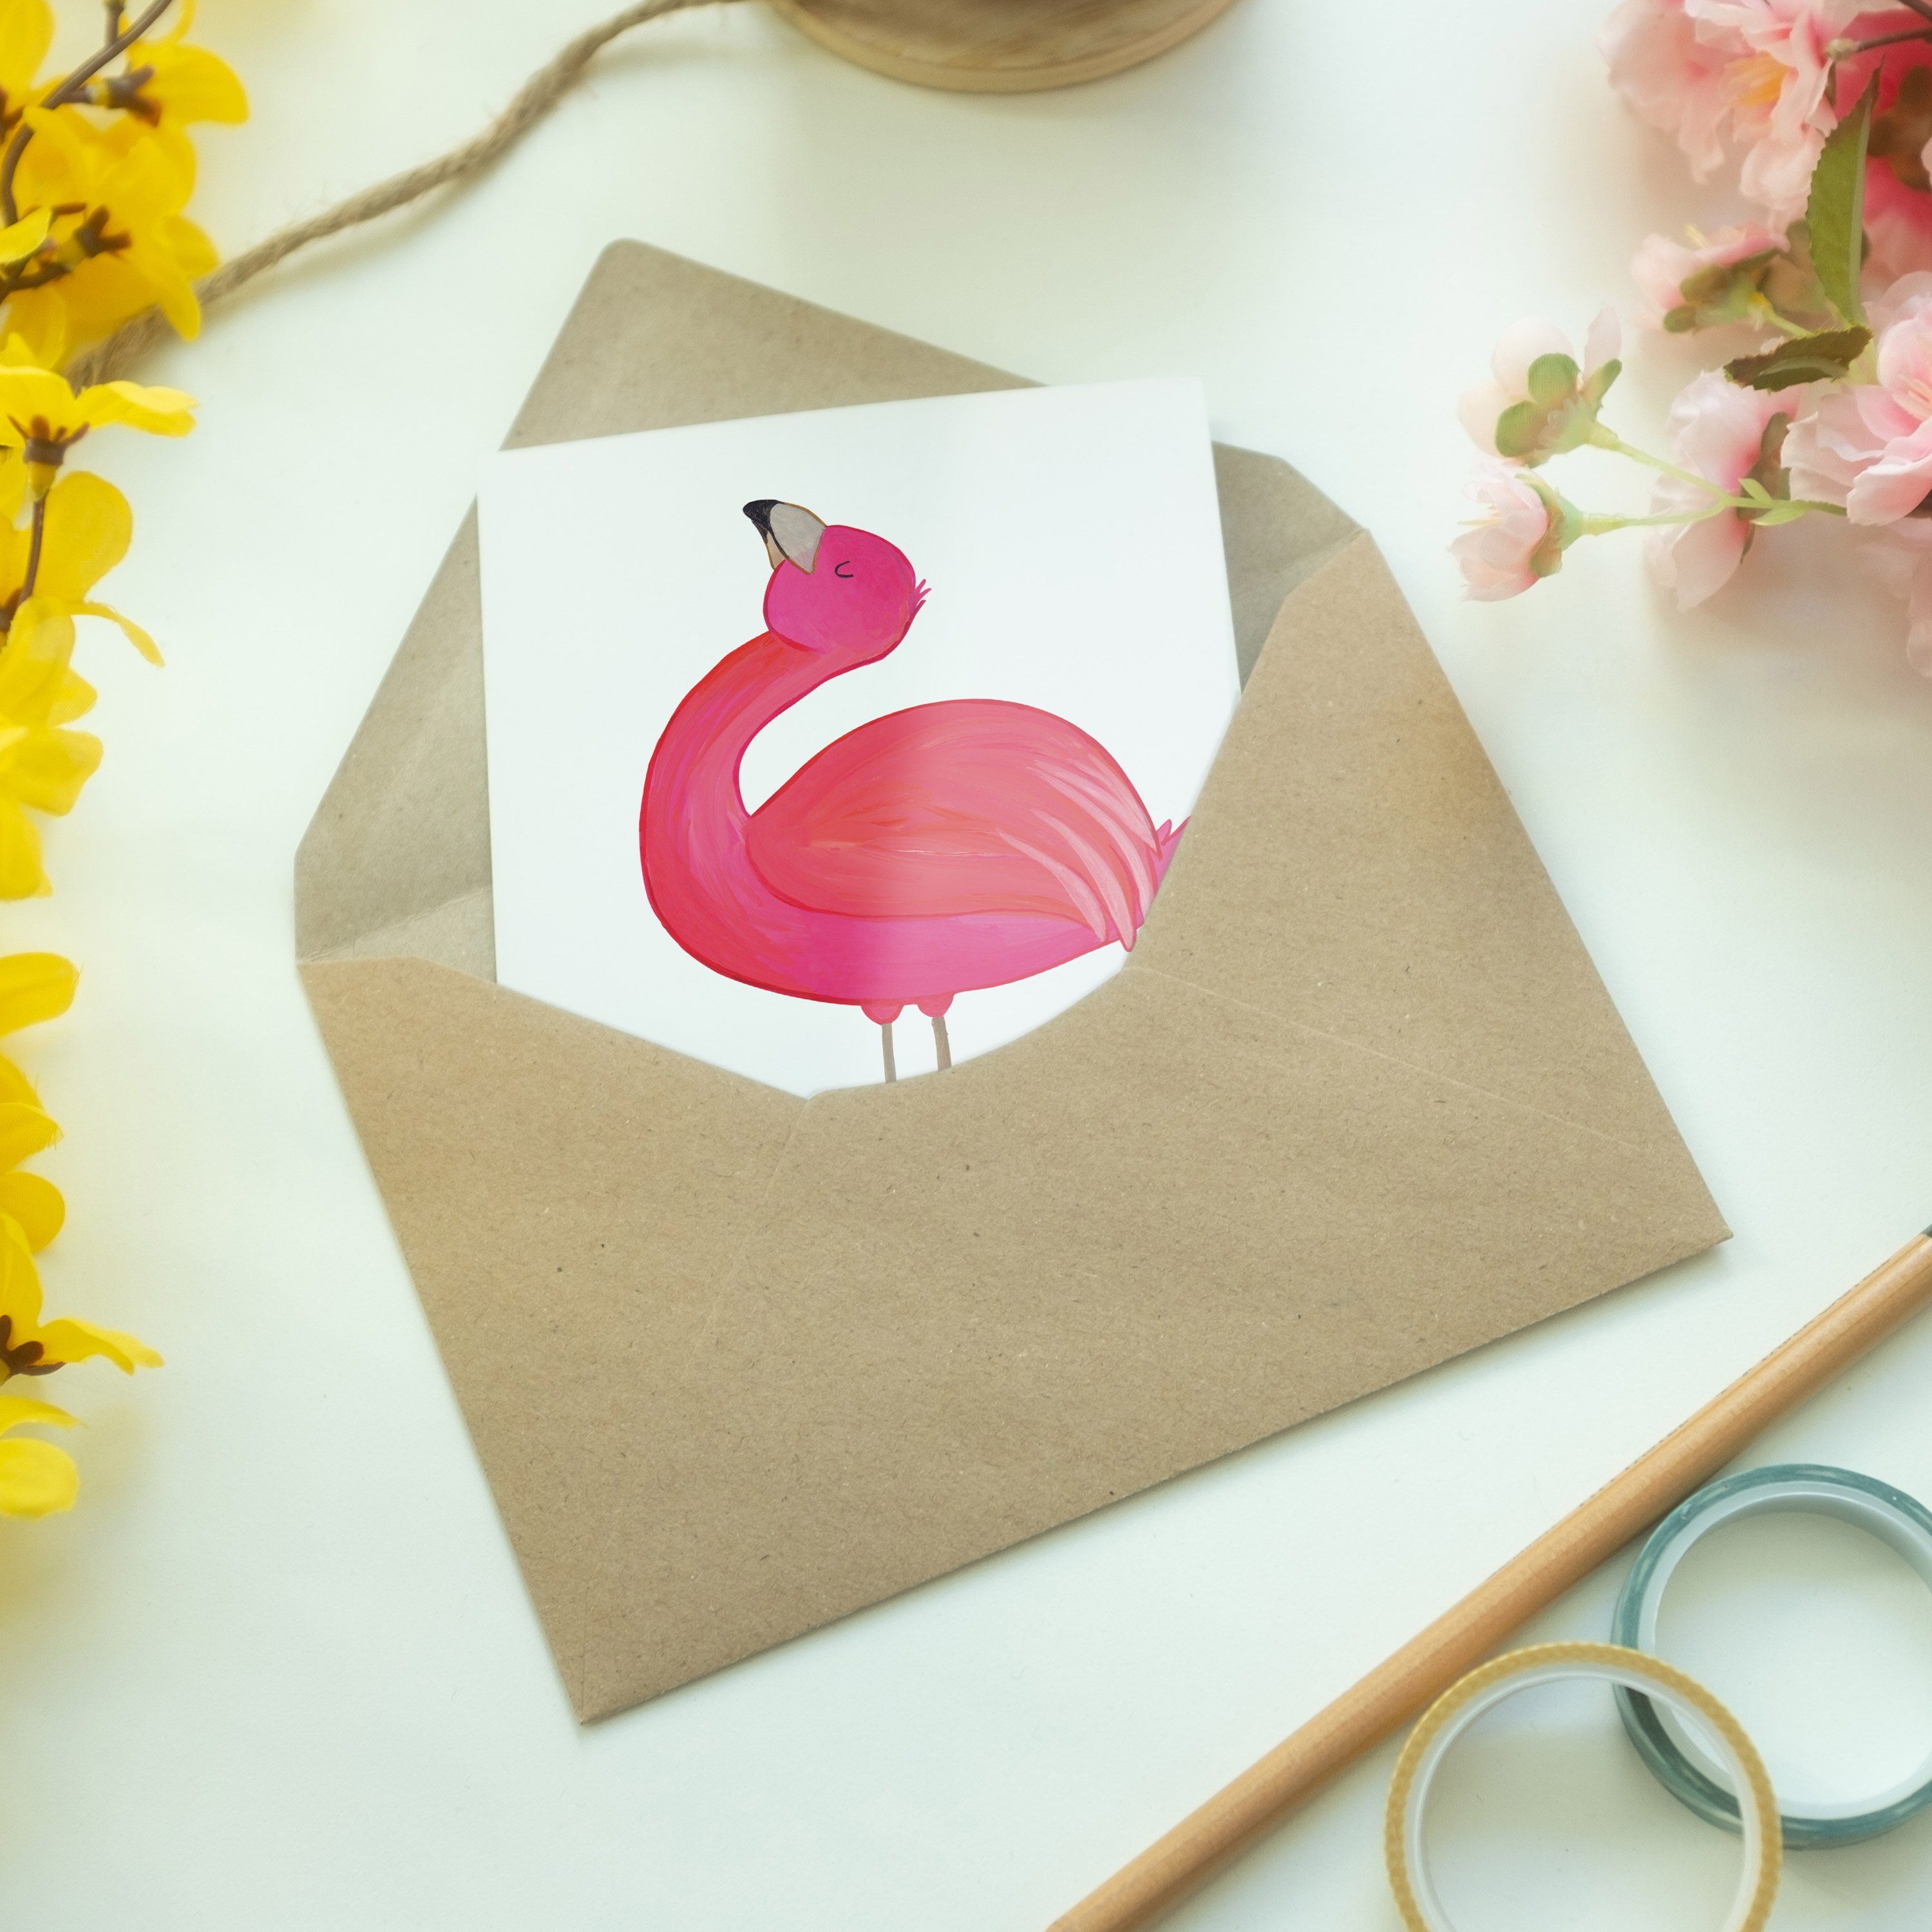 Mr. & Mrs. Panda Grußkarte Klappkarte, - Geschenk, Geburt Weiß stolz - Flamingo Selbstakzeptanz